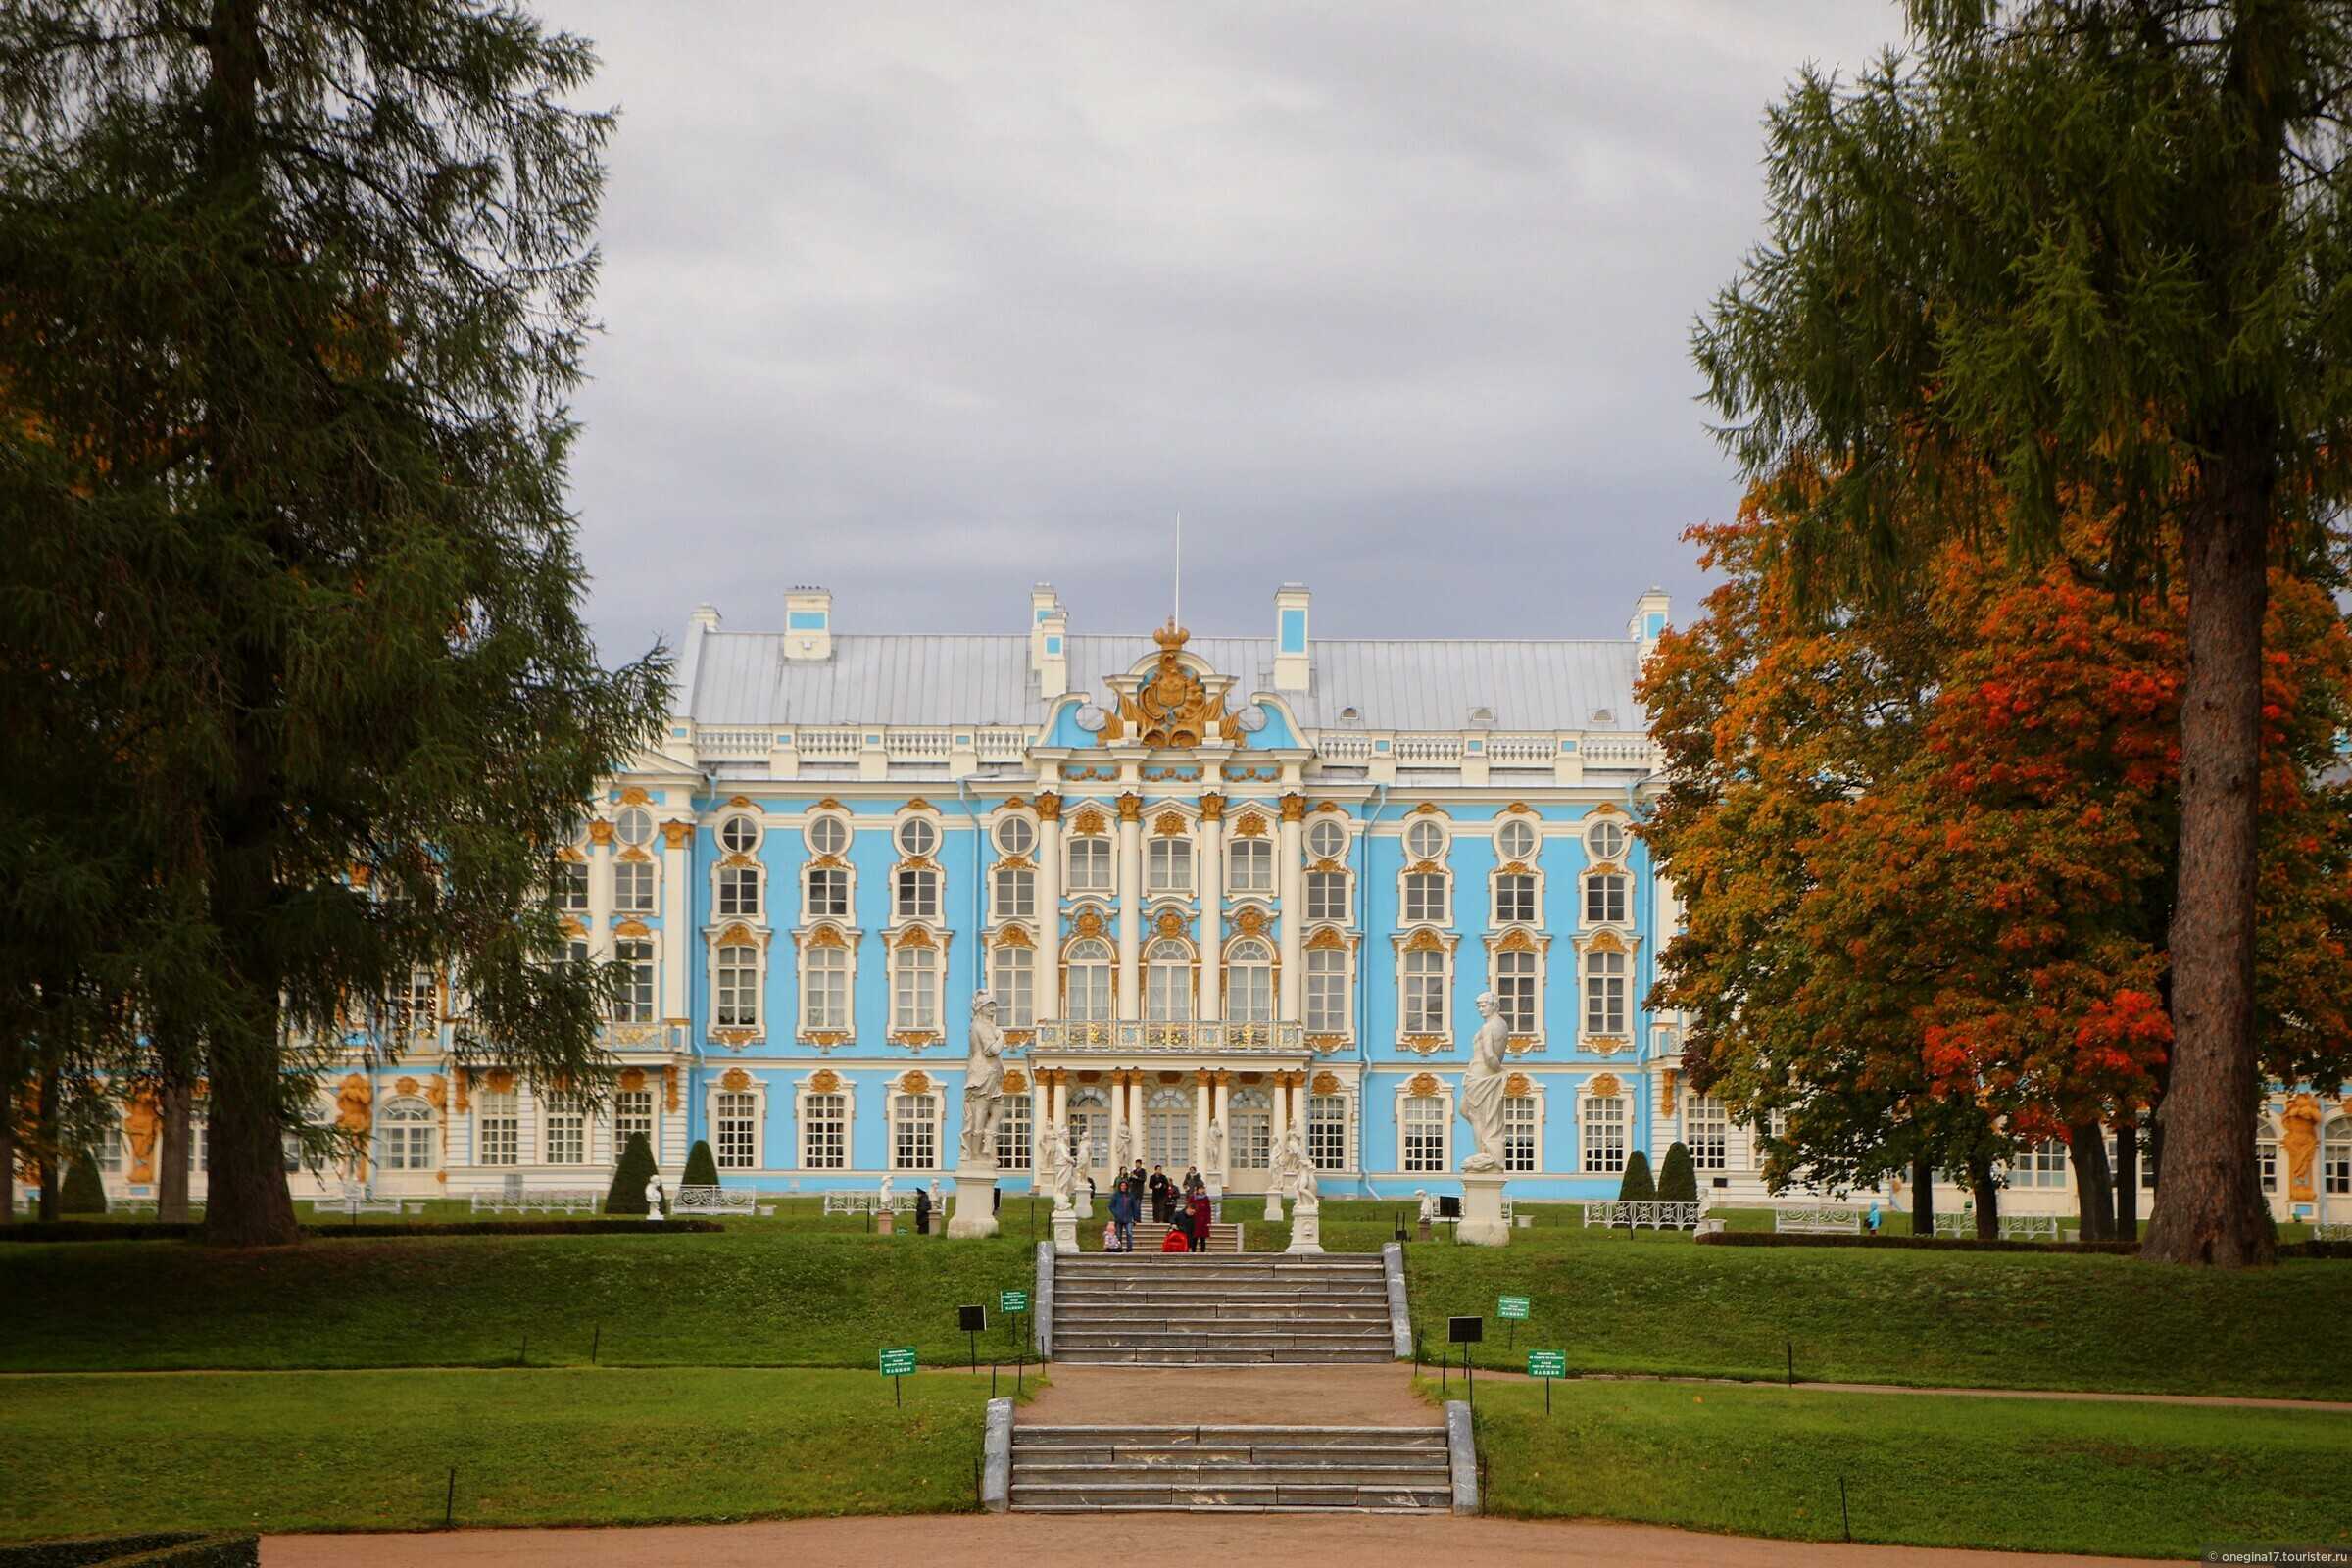 Екатерининский дворец: история и виртуальная прогулка по залам и янтарной комнате